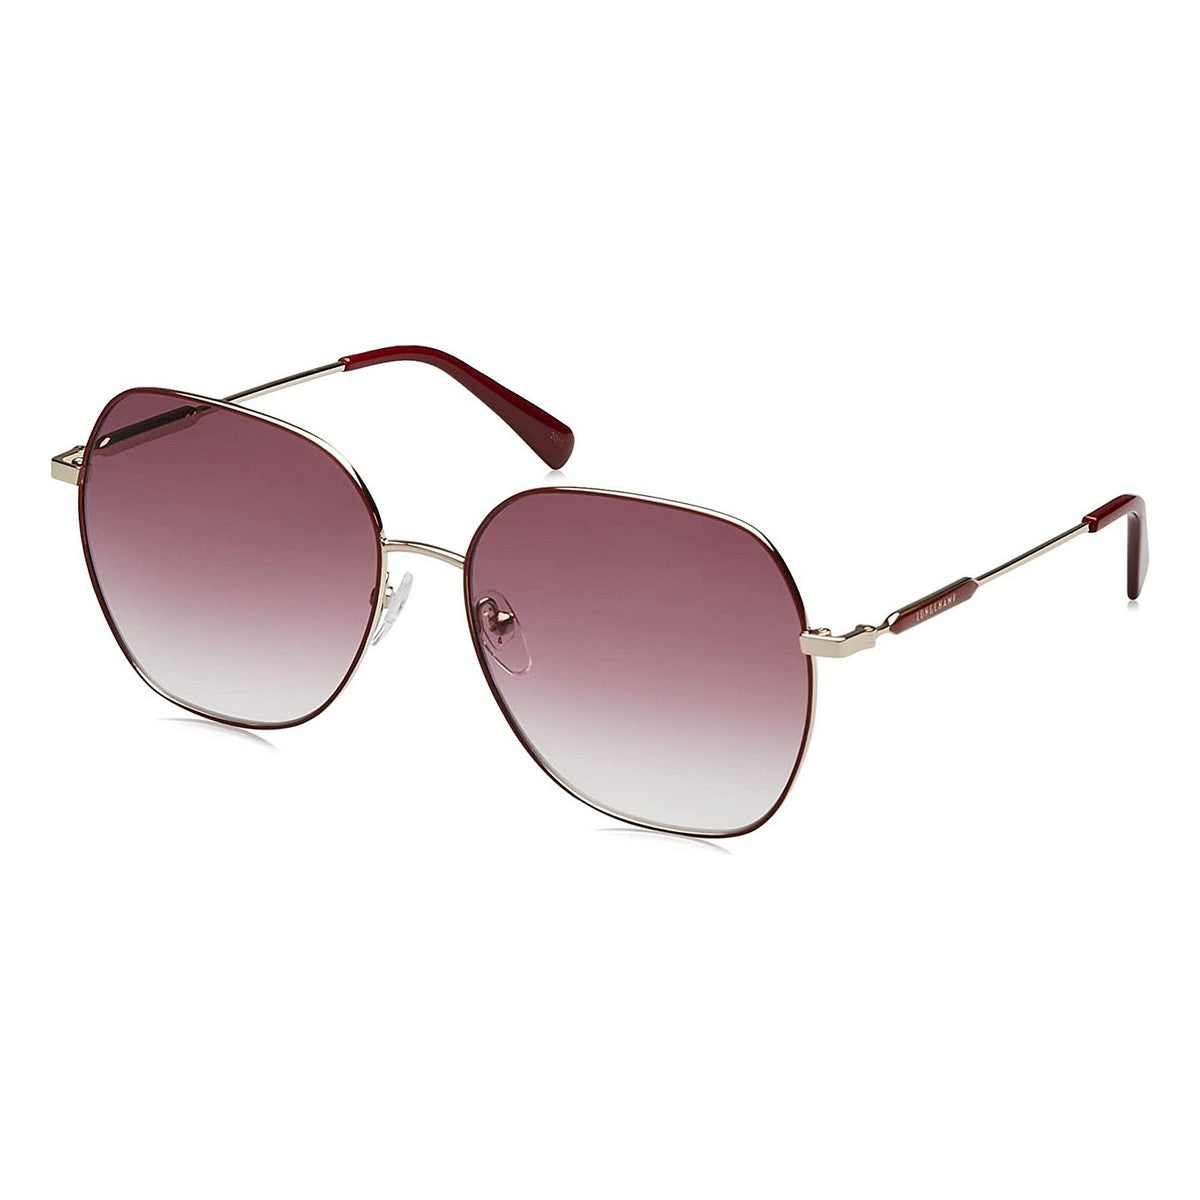 Kaufe Damensonnenbrille Longchamp LO151S-604 ø 60 mm bei AWK Flagship um € 71.00